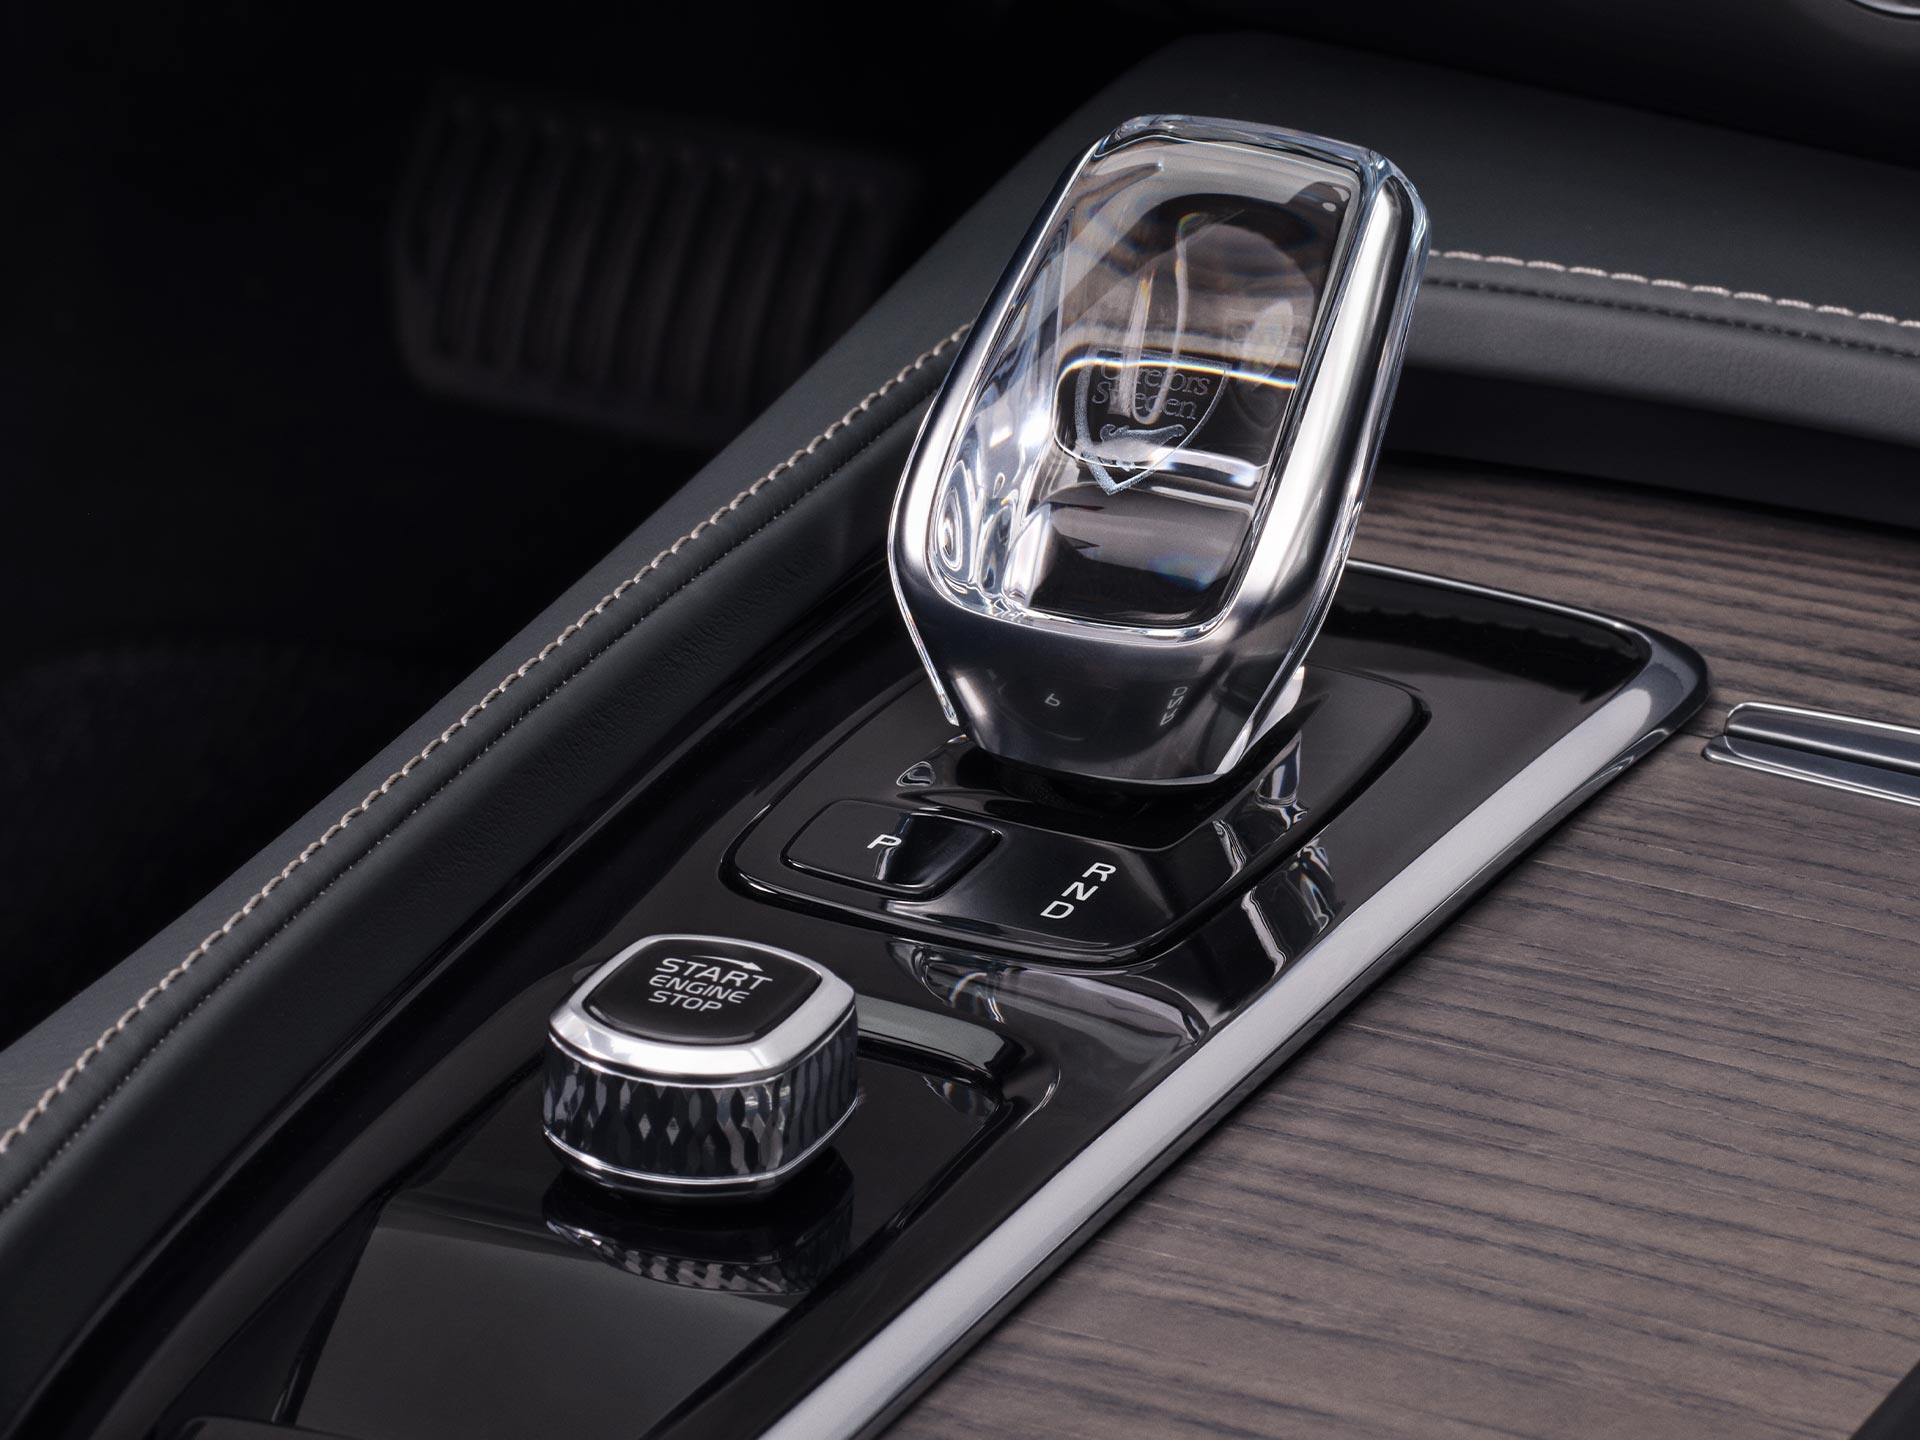 Στο εσωτερικό ενός Volvo V90 Cross Country, ένας κρυστάλλινος επιλογέας ταχυτήτων από γνήσιο σουηδικό κρύσταλλο της Orrefors.